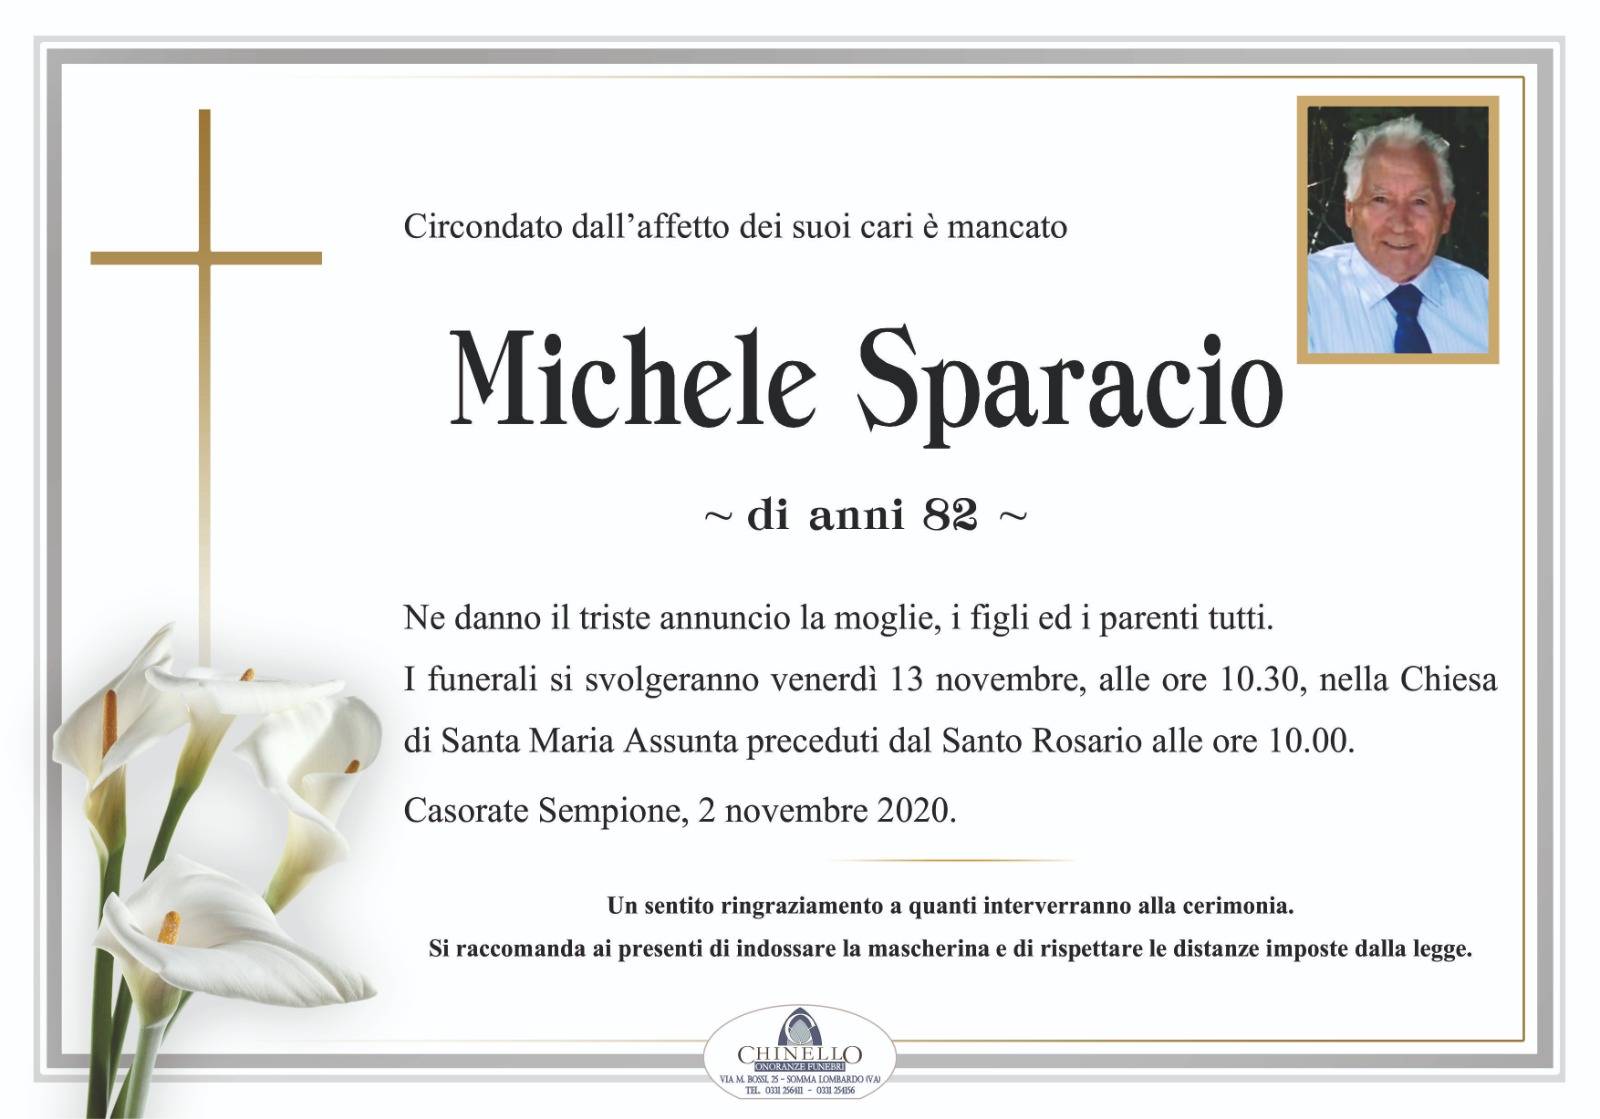 Michele Sparacio